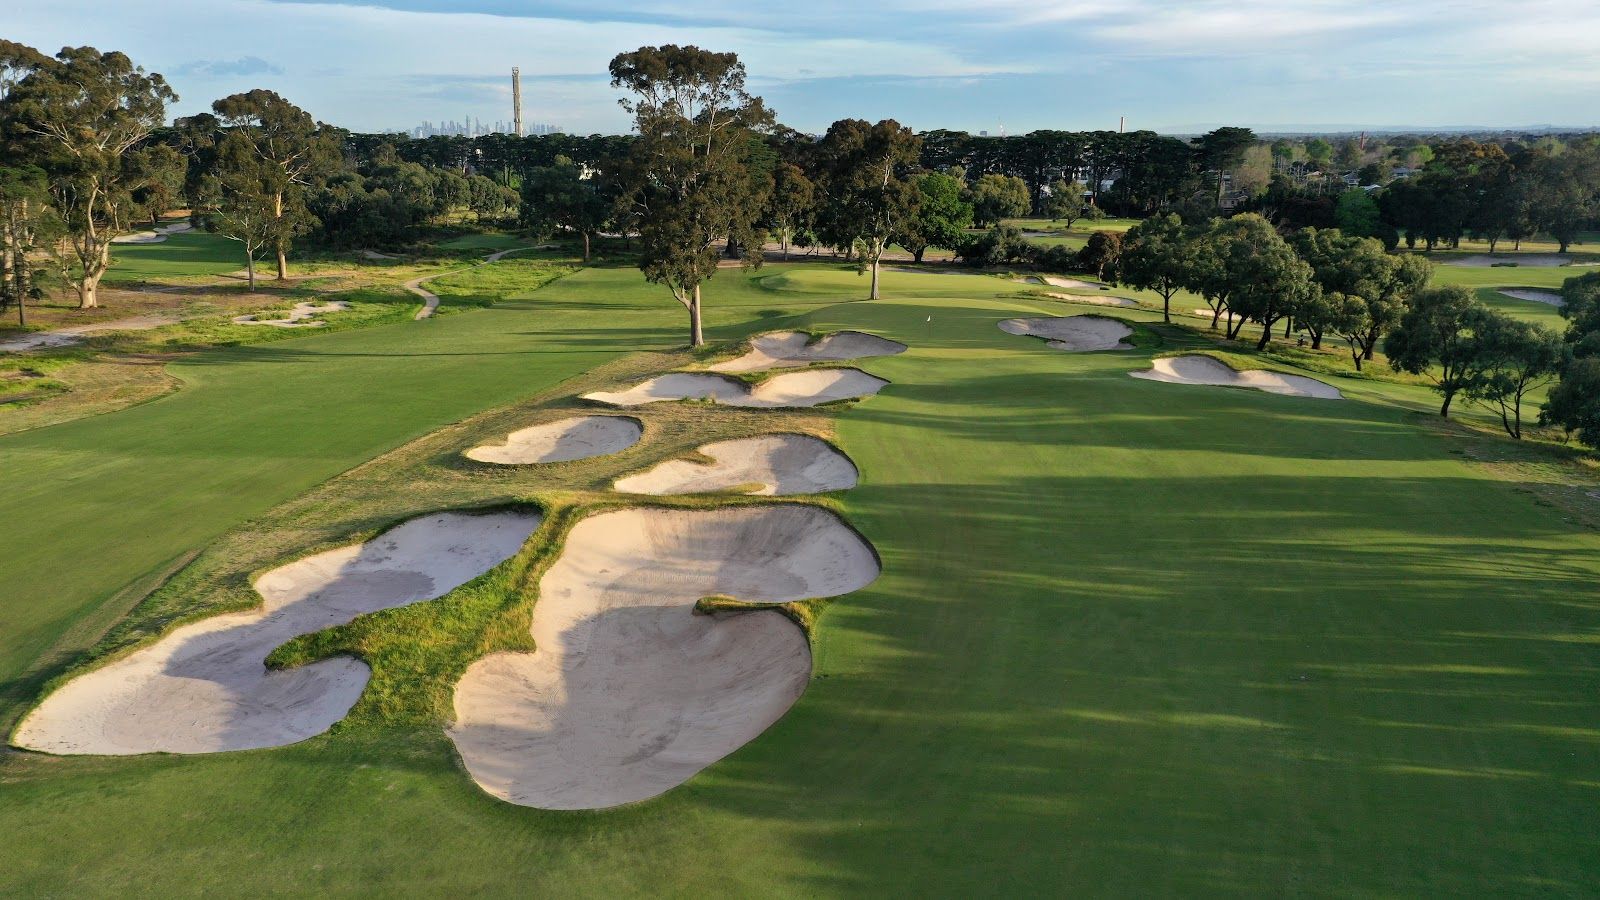  sân golf tốt nhất nước Úc